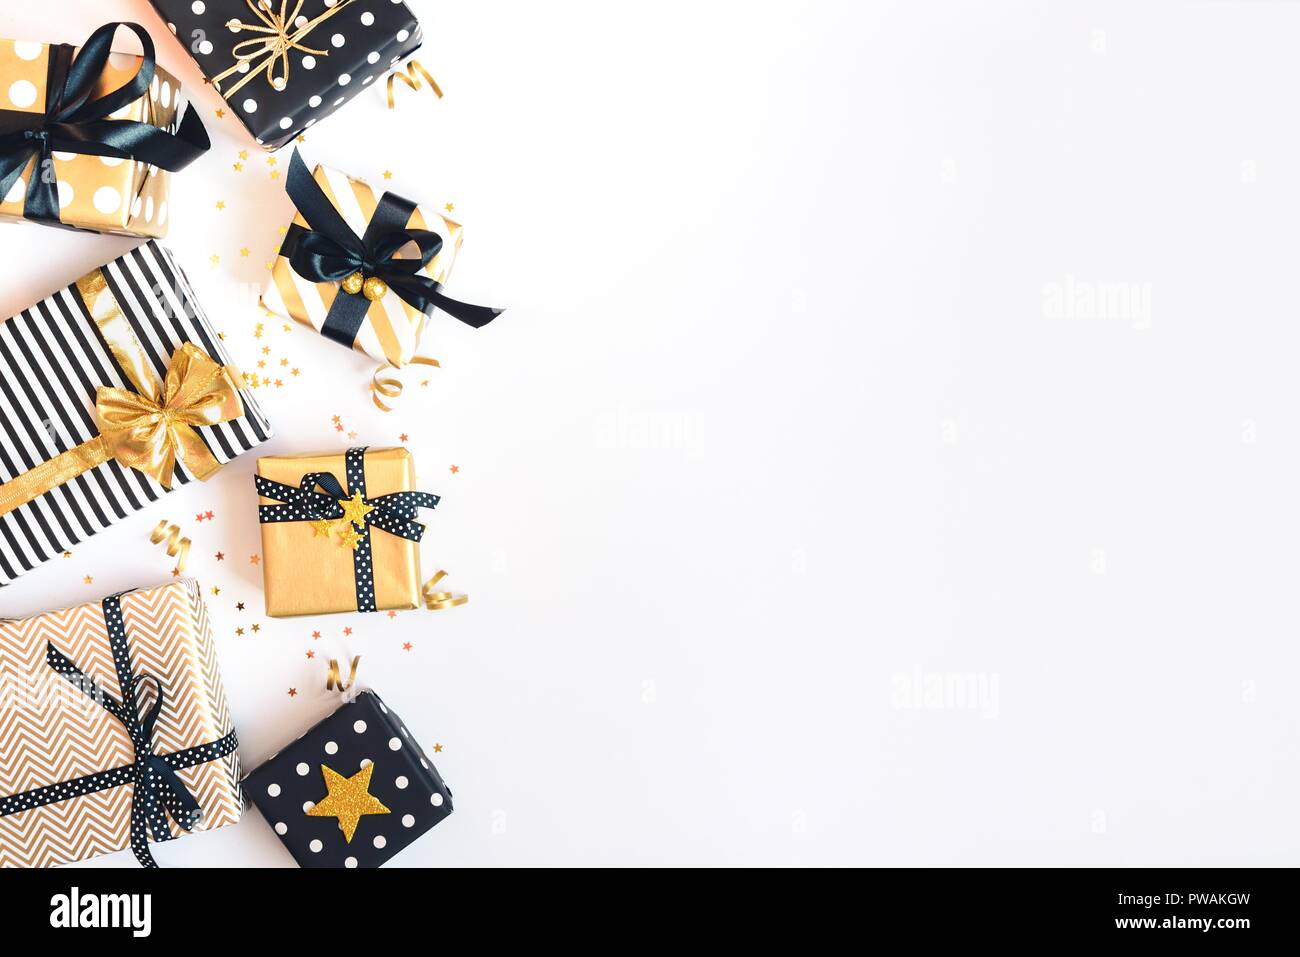 Vista superiore delle confezioni regalo in vari nero, bianco e disegni dorati. Laici piana, copia dello spazio. Un concetto di Natale, Capodanno, Festa di compleanno evento. Foto Stock